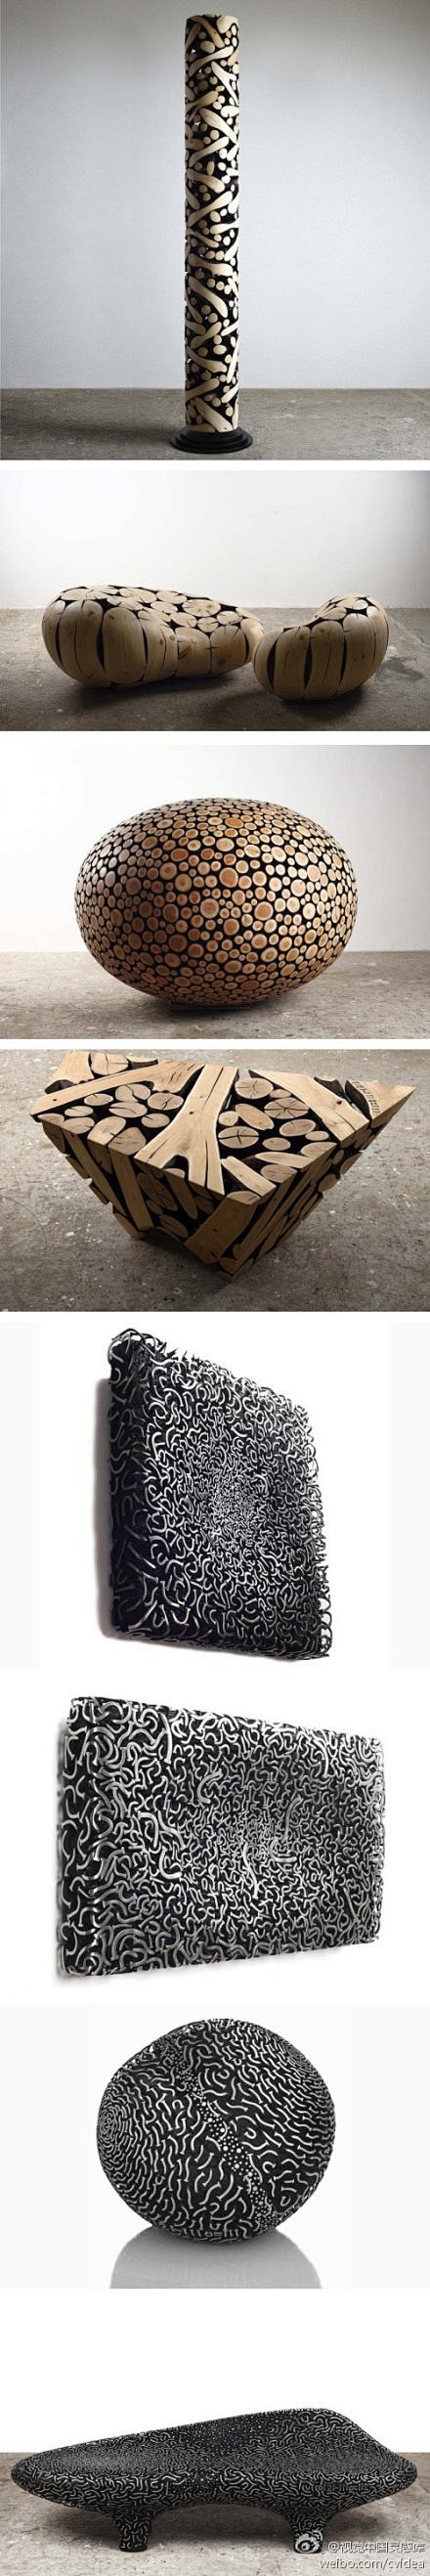 韩国艺术家jaehyo lee用金属和木...